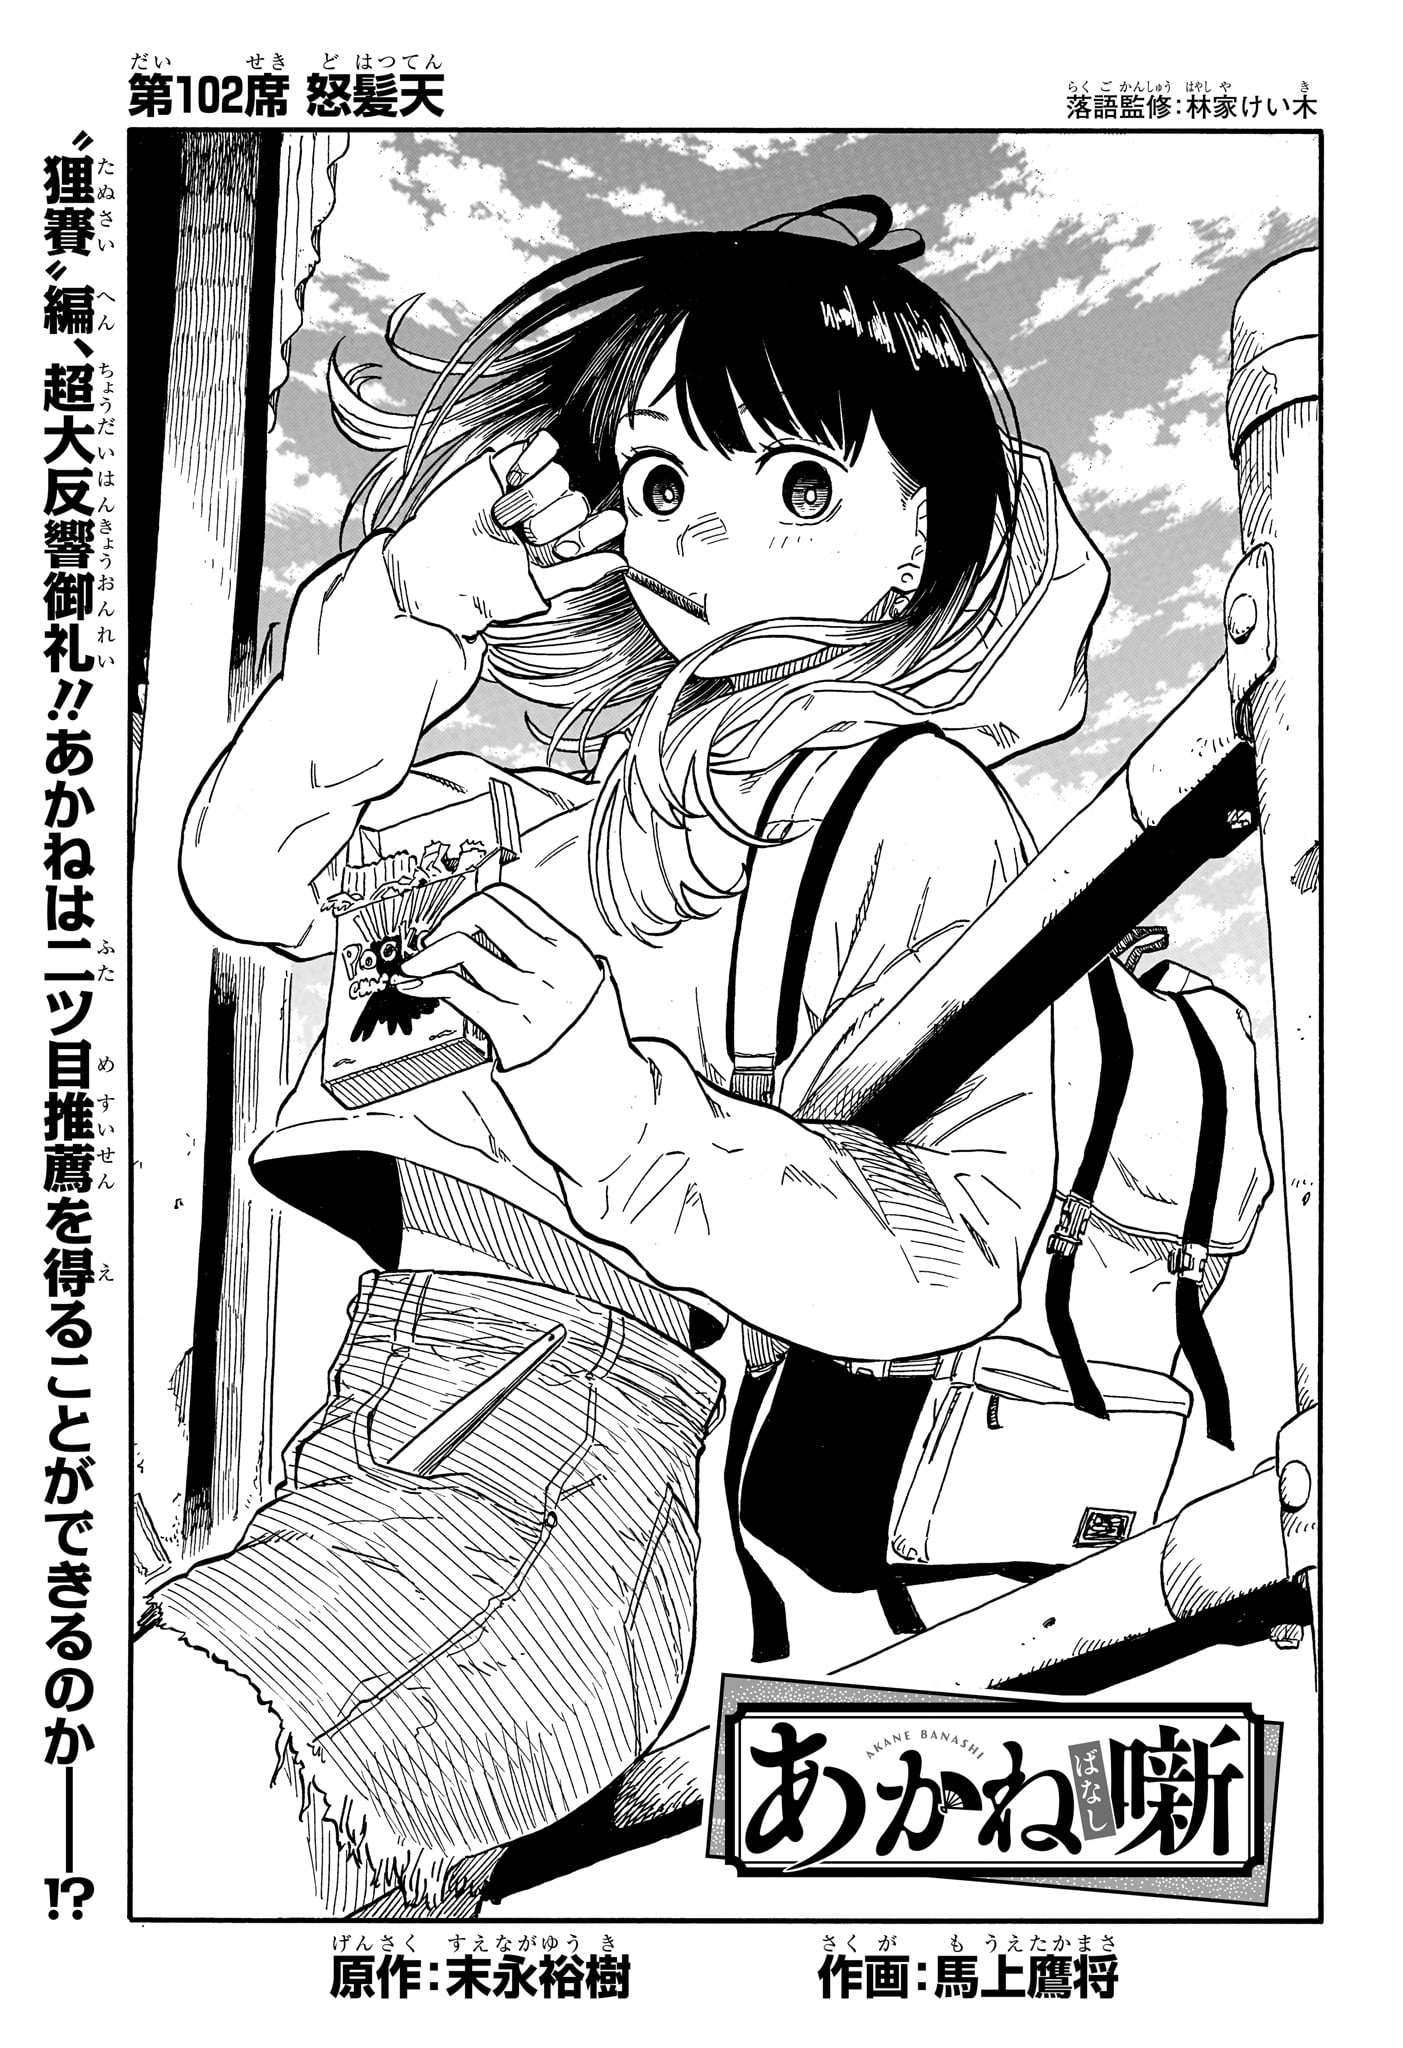 Akane-Banashi - Chapter 102 - Page 1